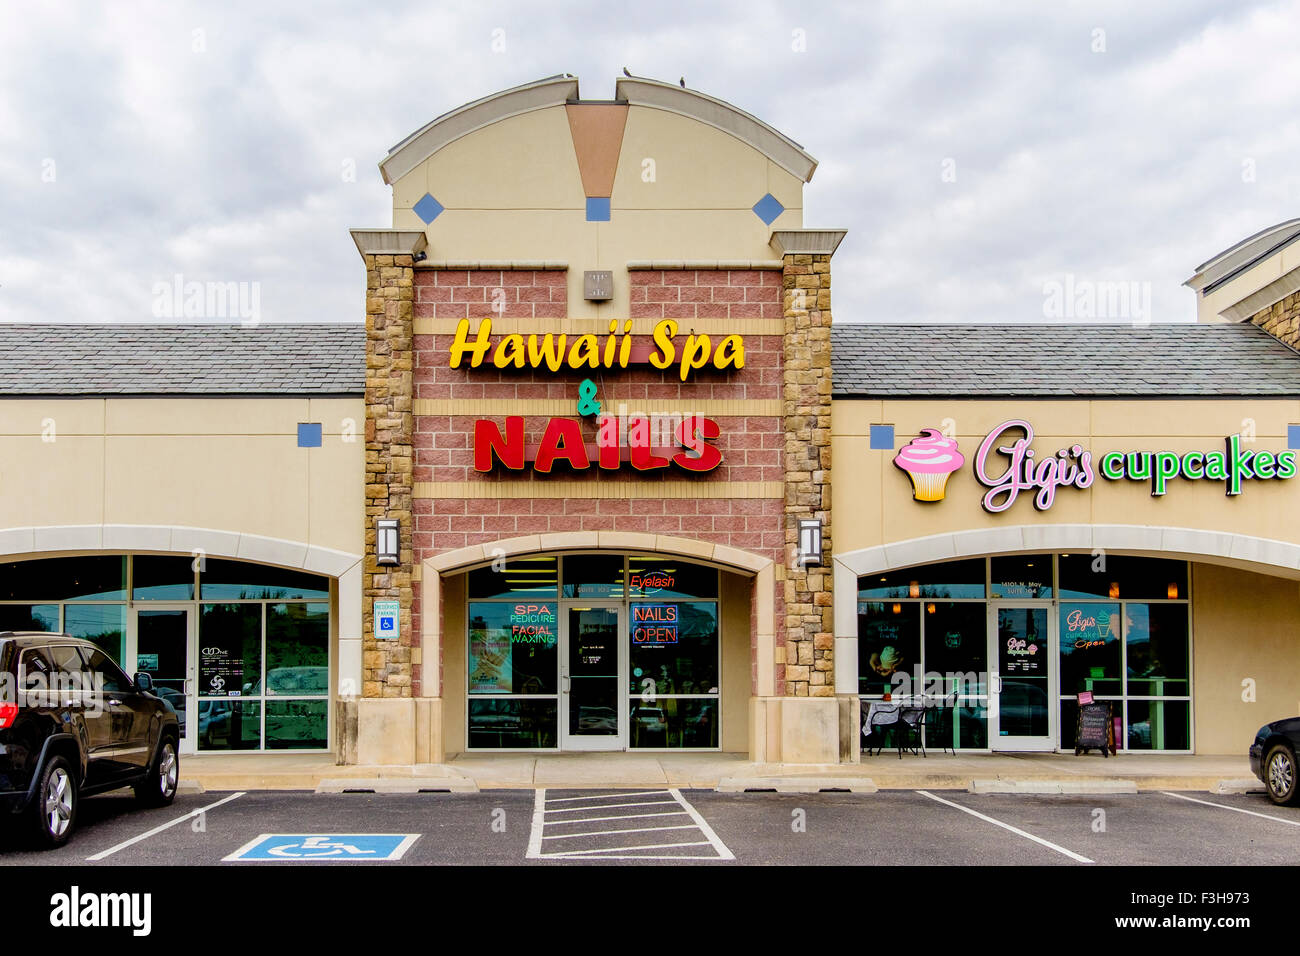 Hawaii Spa Nail Salon und Gigis Cupcakes speichern Außenbereich in einer Mall in Oklahoma City, Oklahoma, USA. Stockfoto